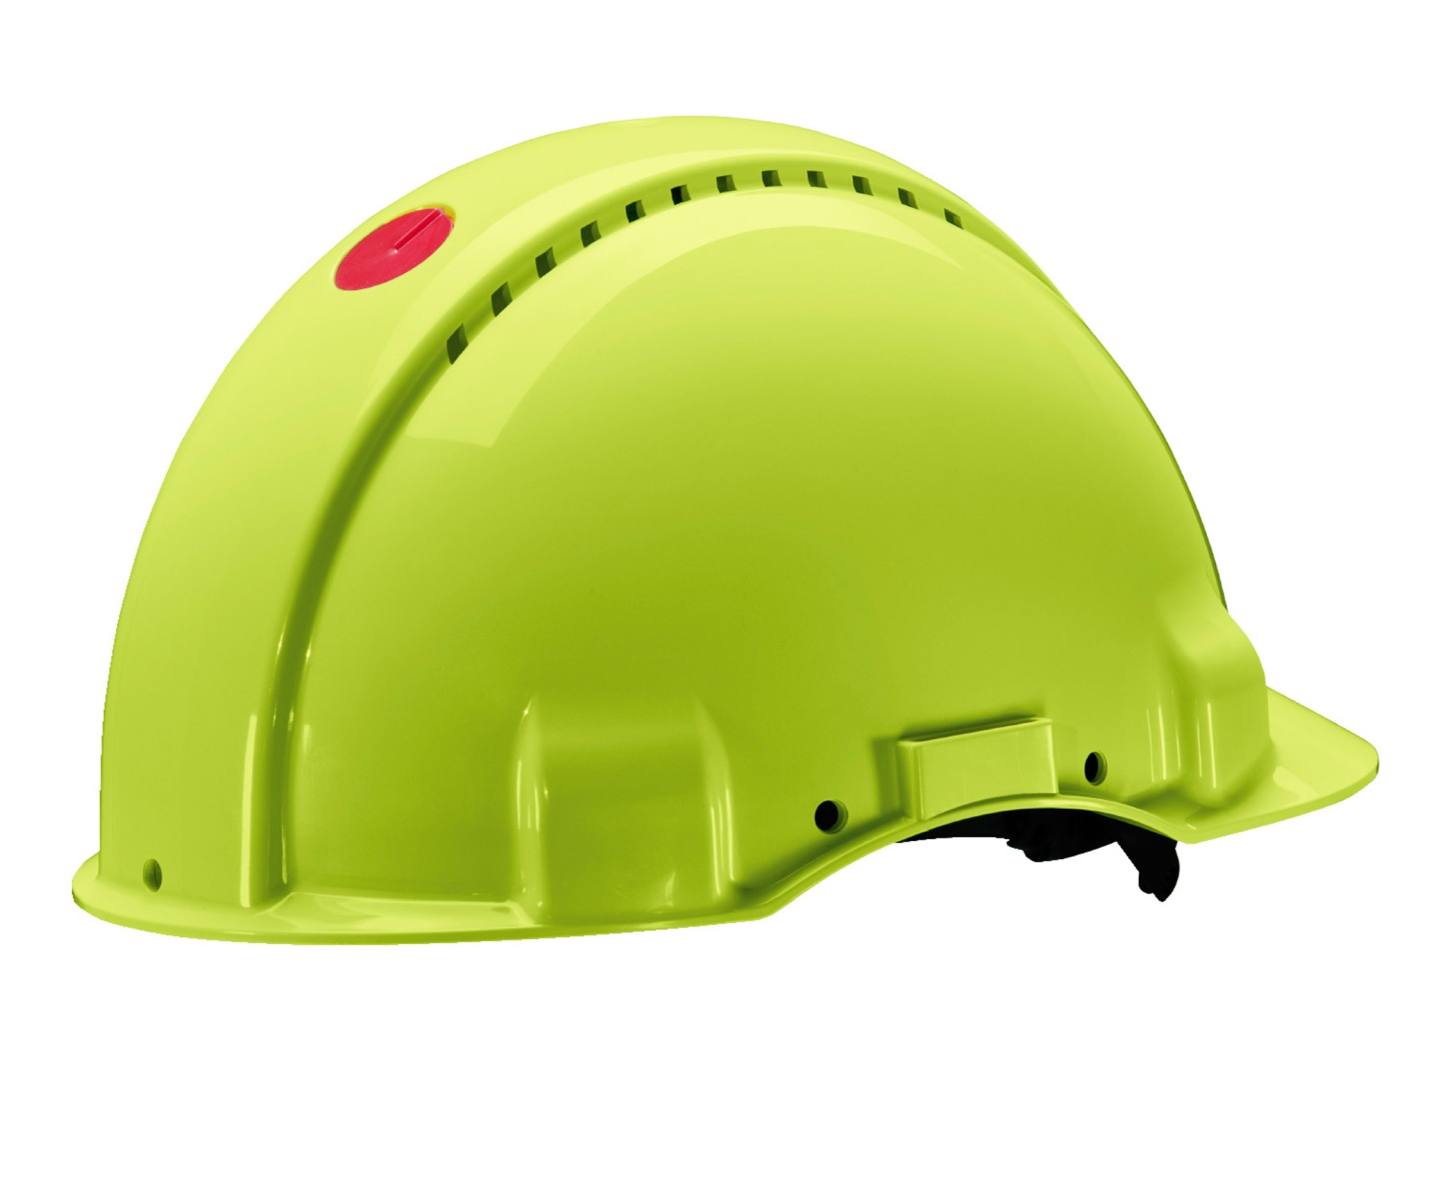 3M G3000 casque de protection G30NUV en vert fluo, ventilé, avec uvicator, cliquet et bande de soudure en plastique